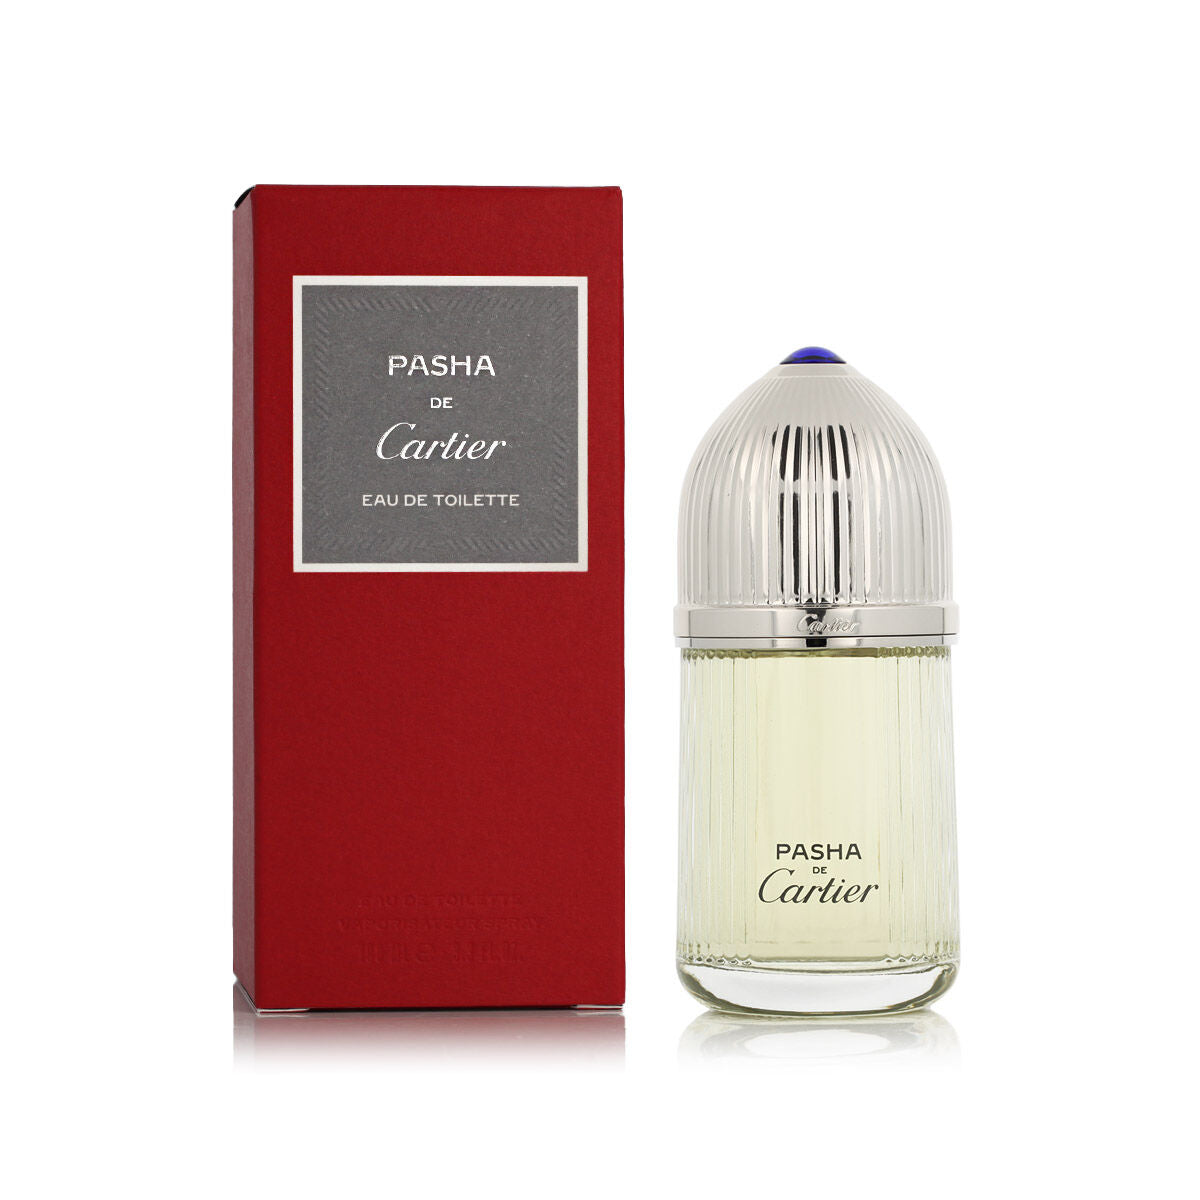 Herren Parfüm Cartier Edt Pasha de Cartier 100 ml